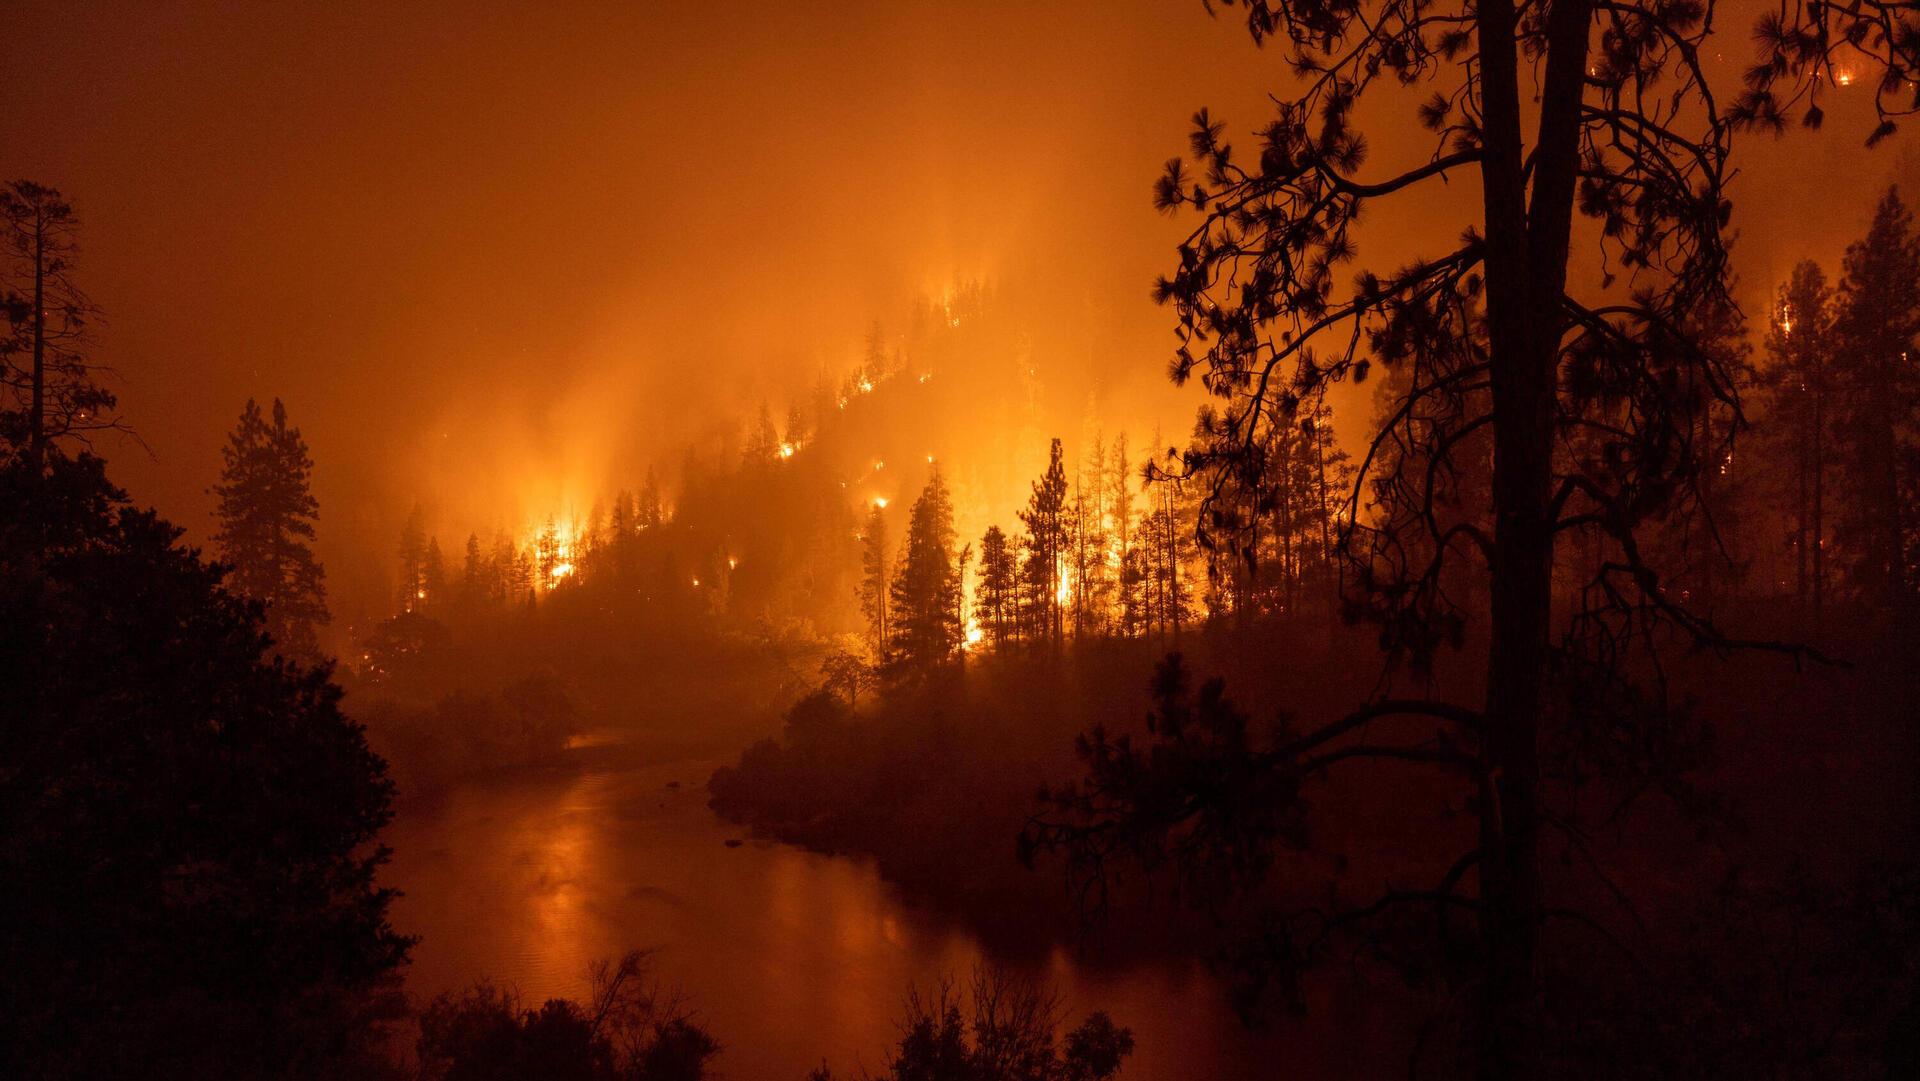 שריפות ליד ירקא צפון קליפורניה